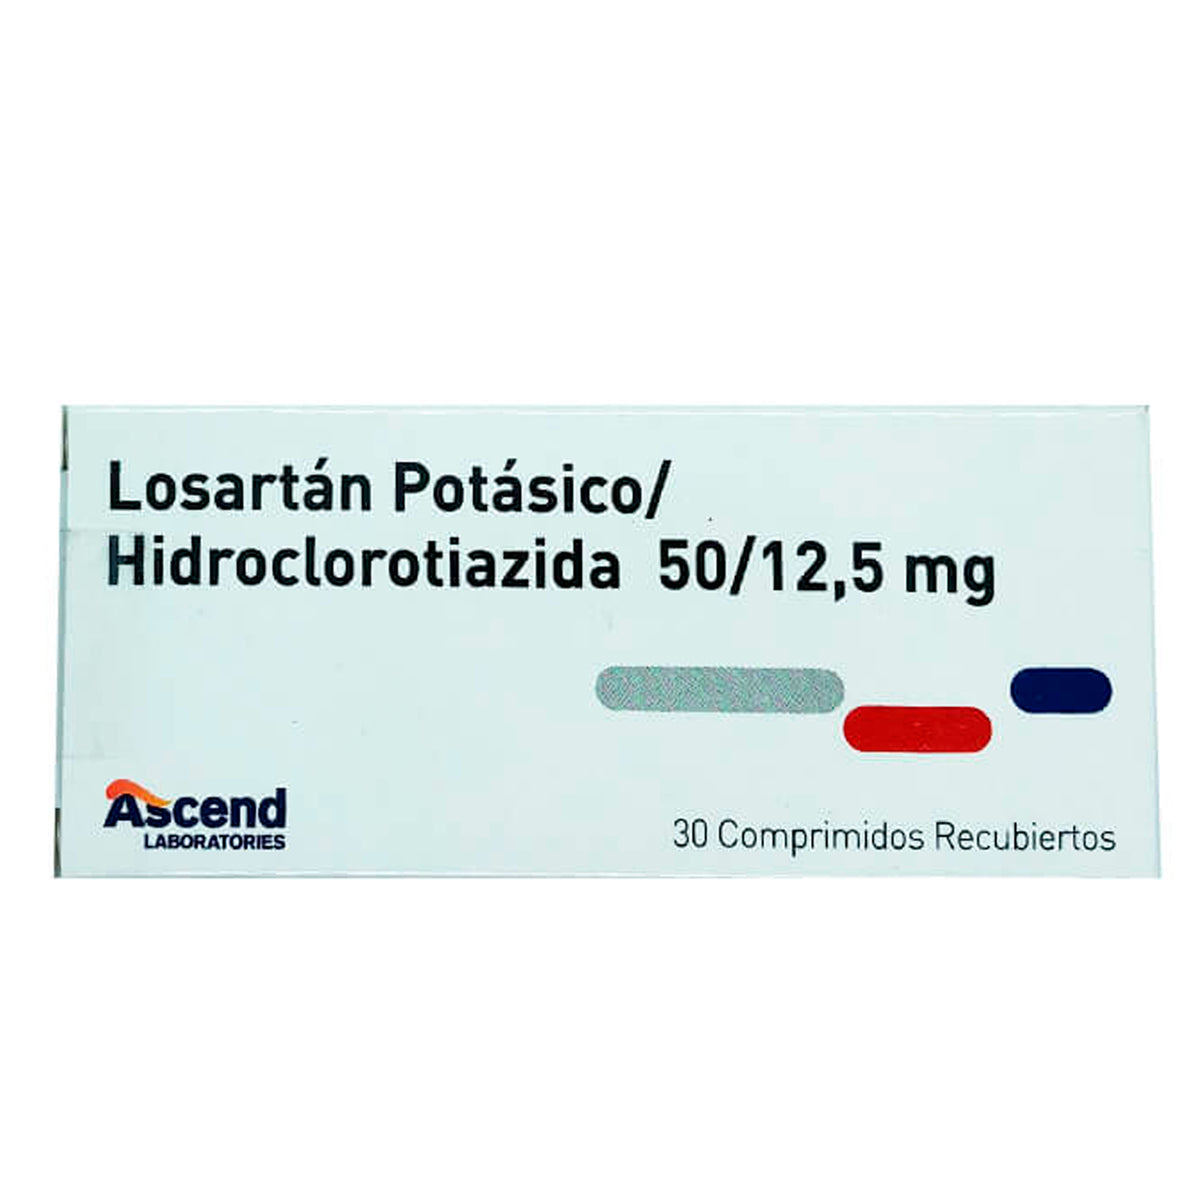 Losartan/Hidroclorotiazida Comprimidos Recubiertos 50/12,5